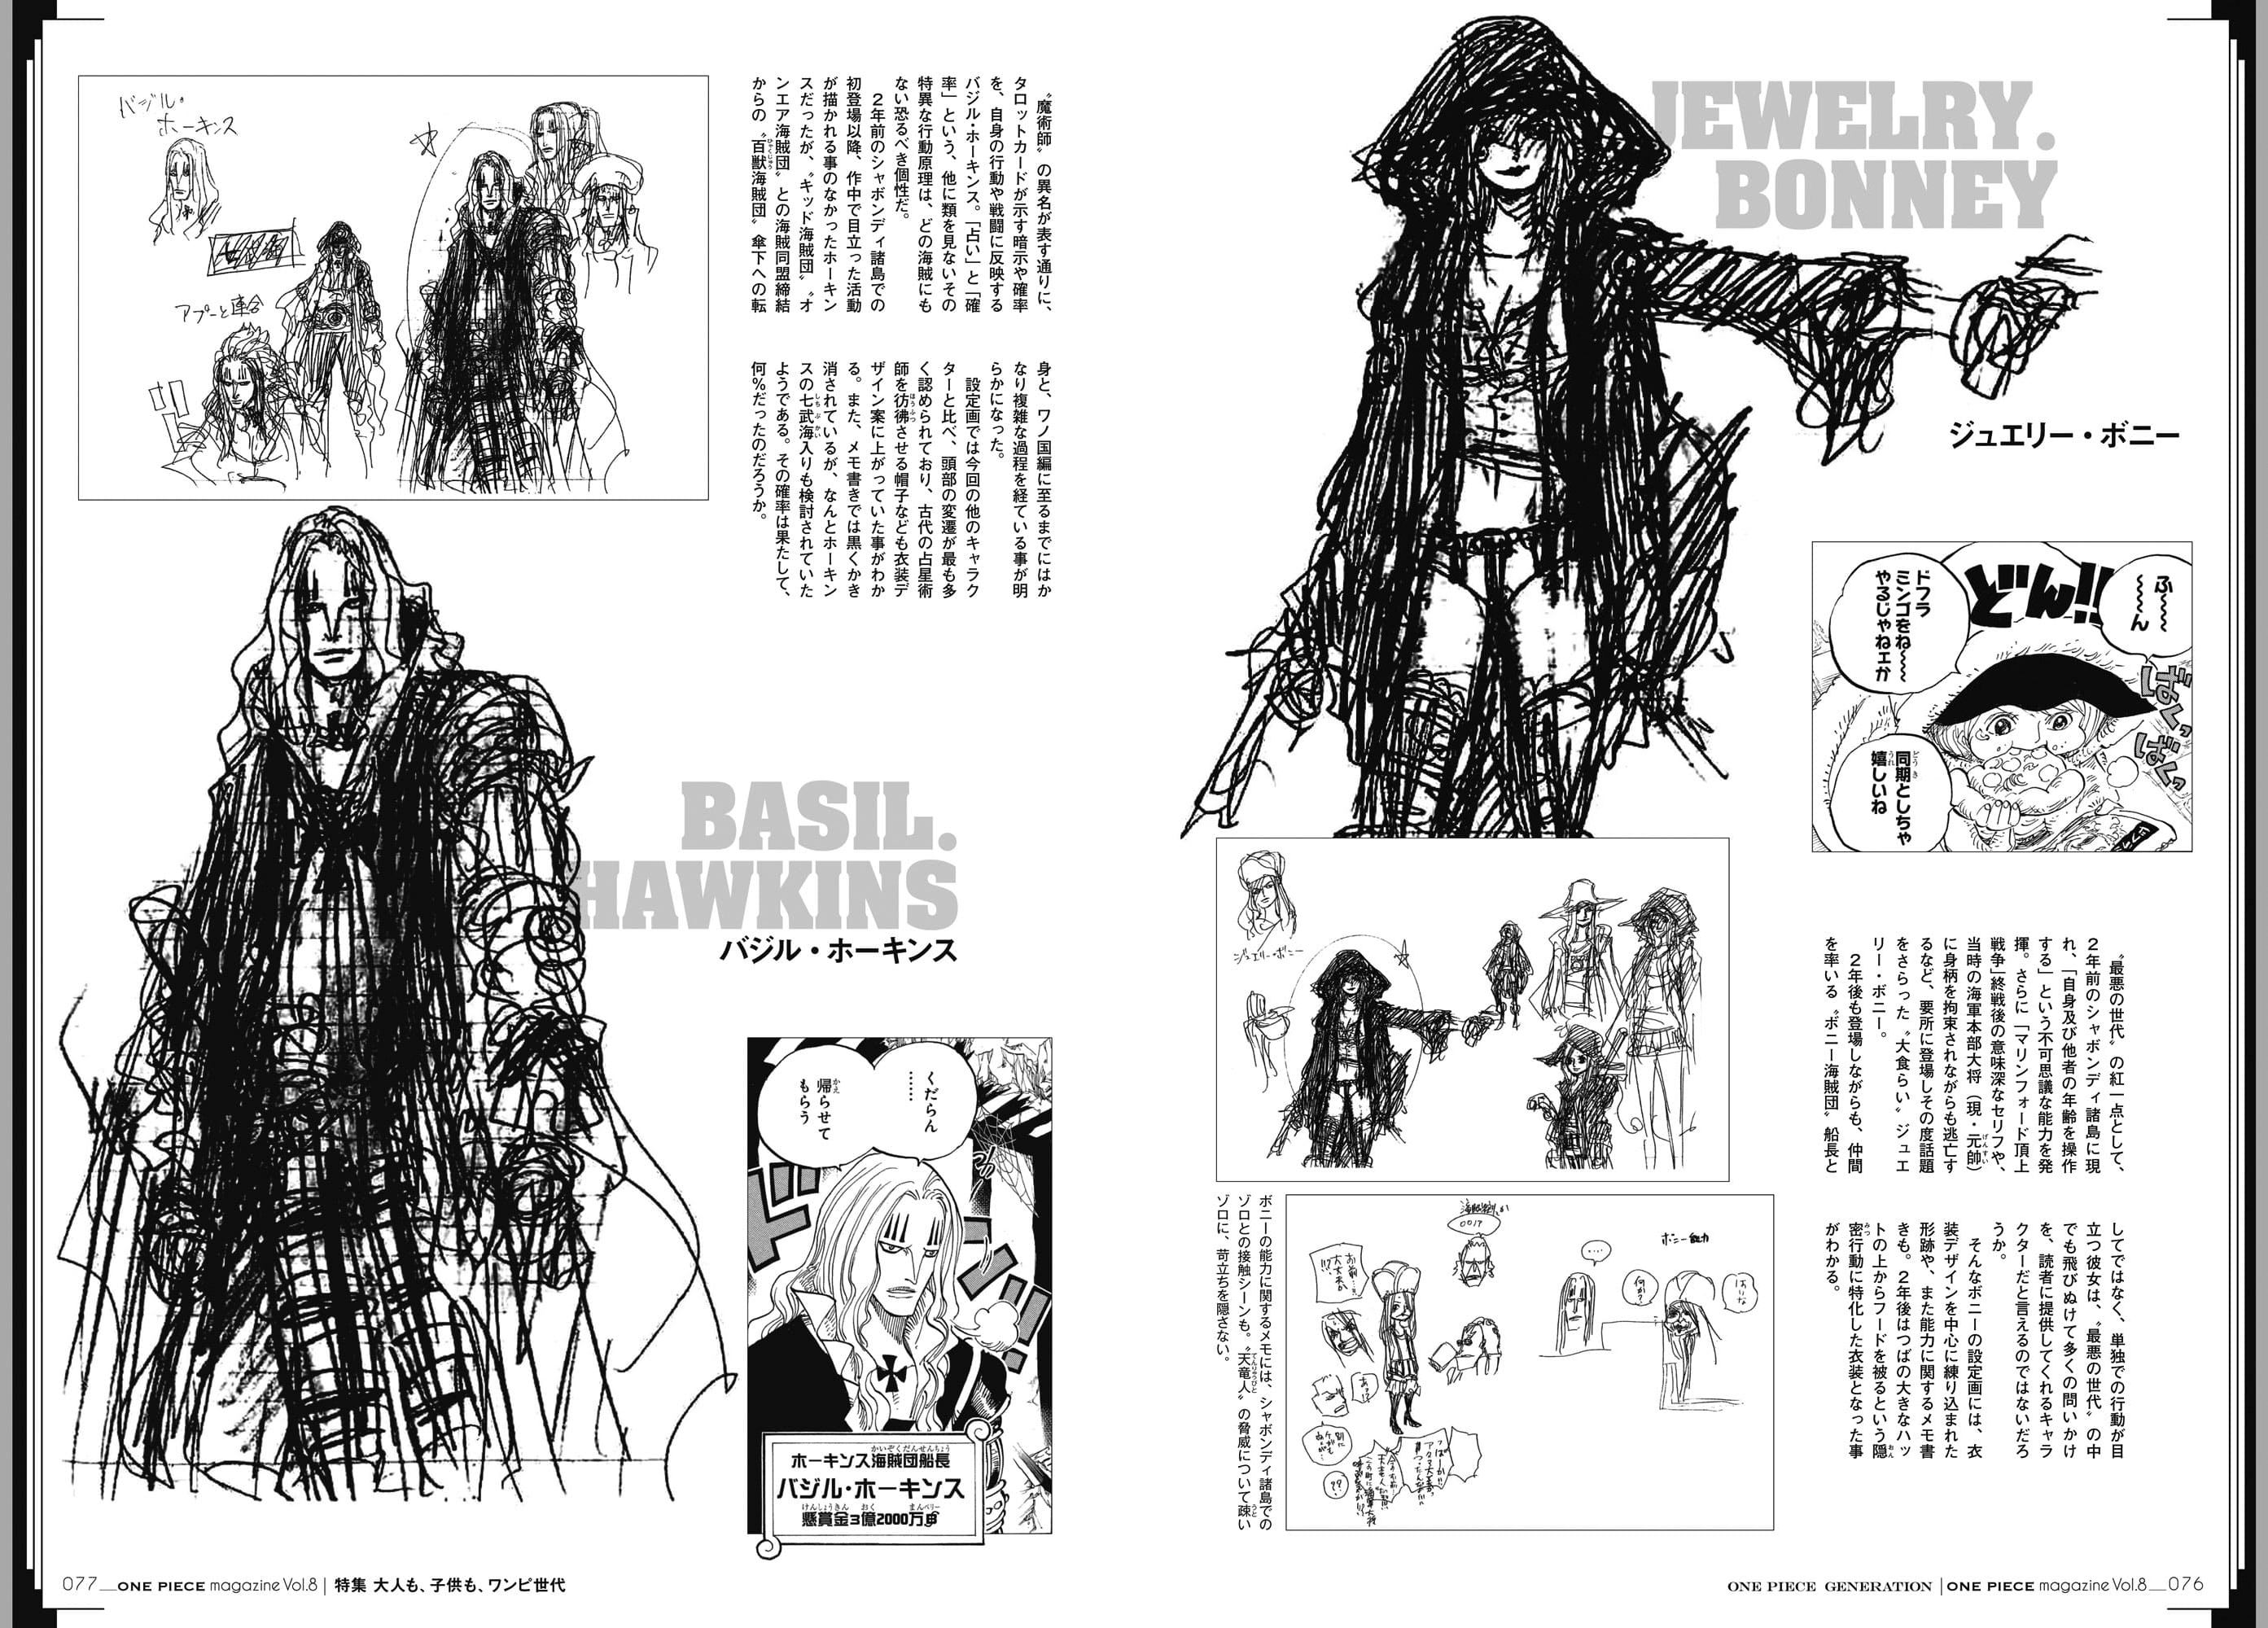 News One Piece Magazine Vol 8 01 12 19 Page 14 Worstgen